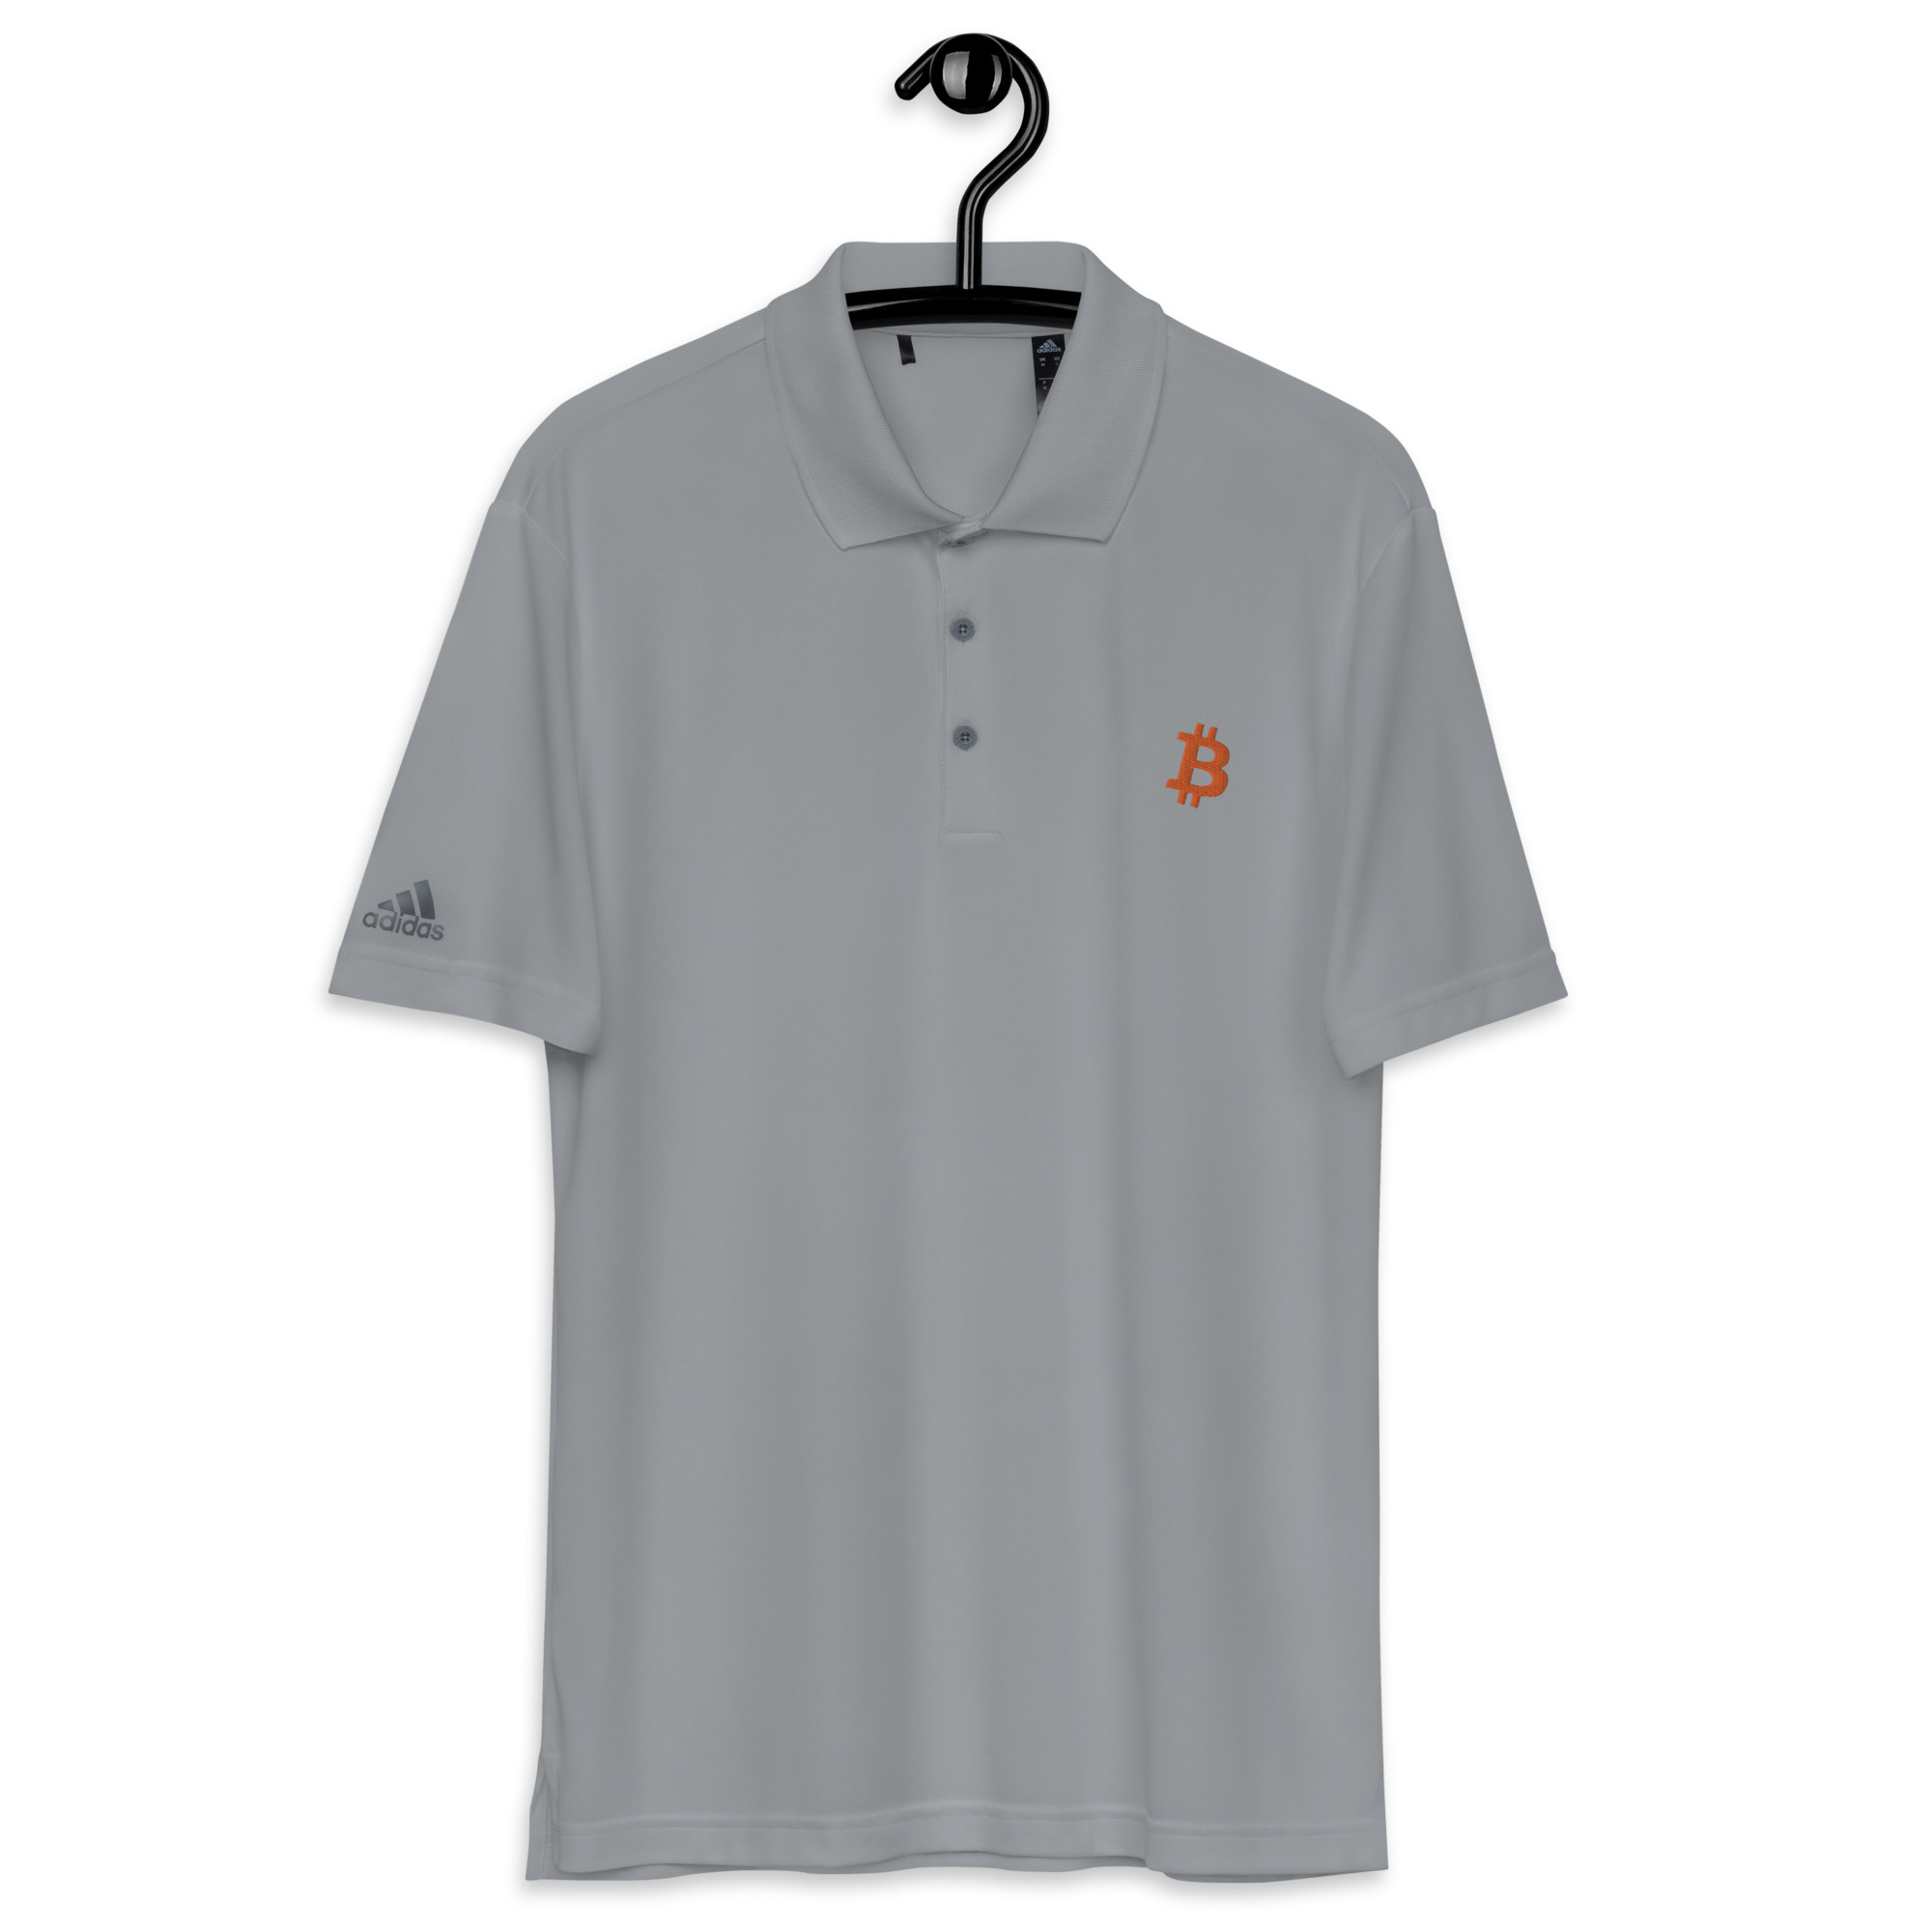 Bitcoin shirt - bitcoin adidas polo shirt on a hanger - Gray bitcoin polo shirt